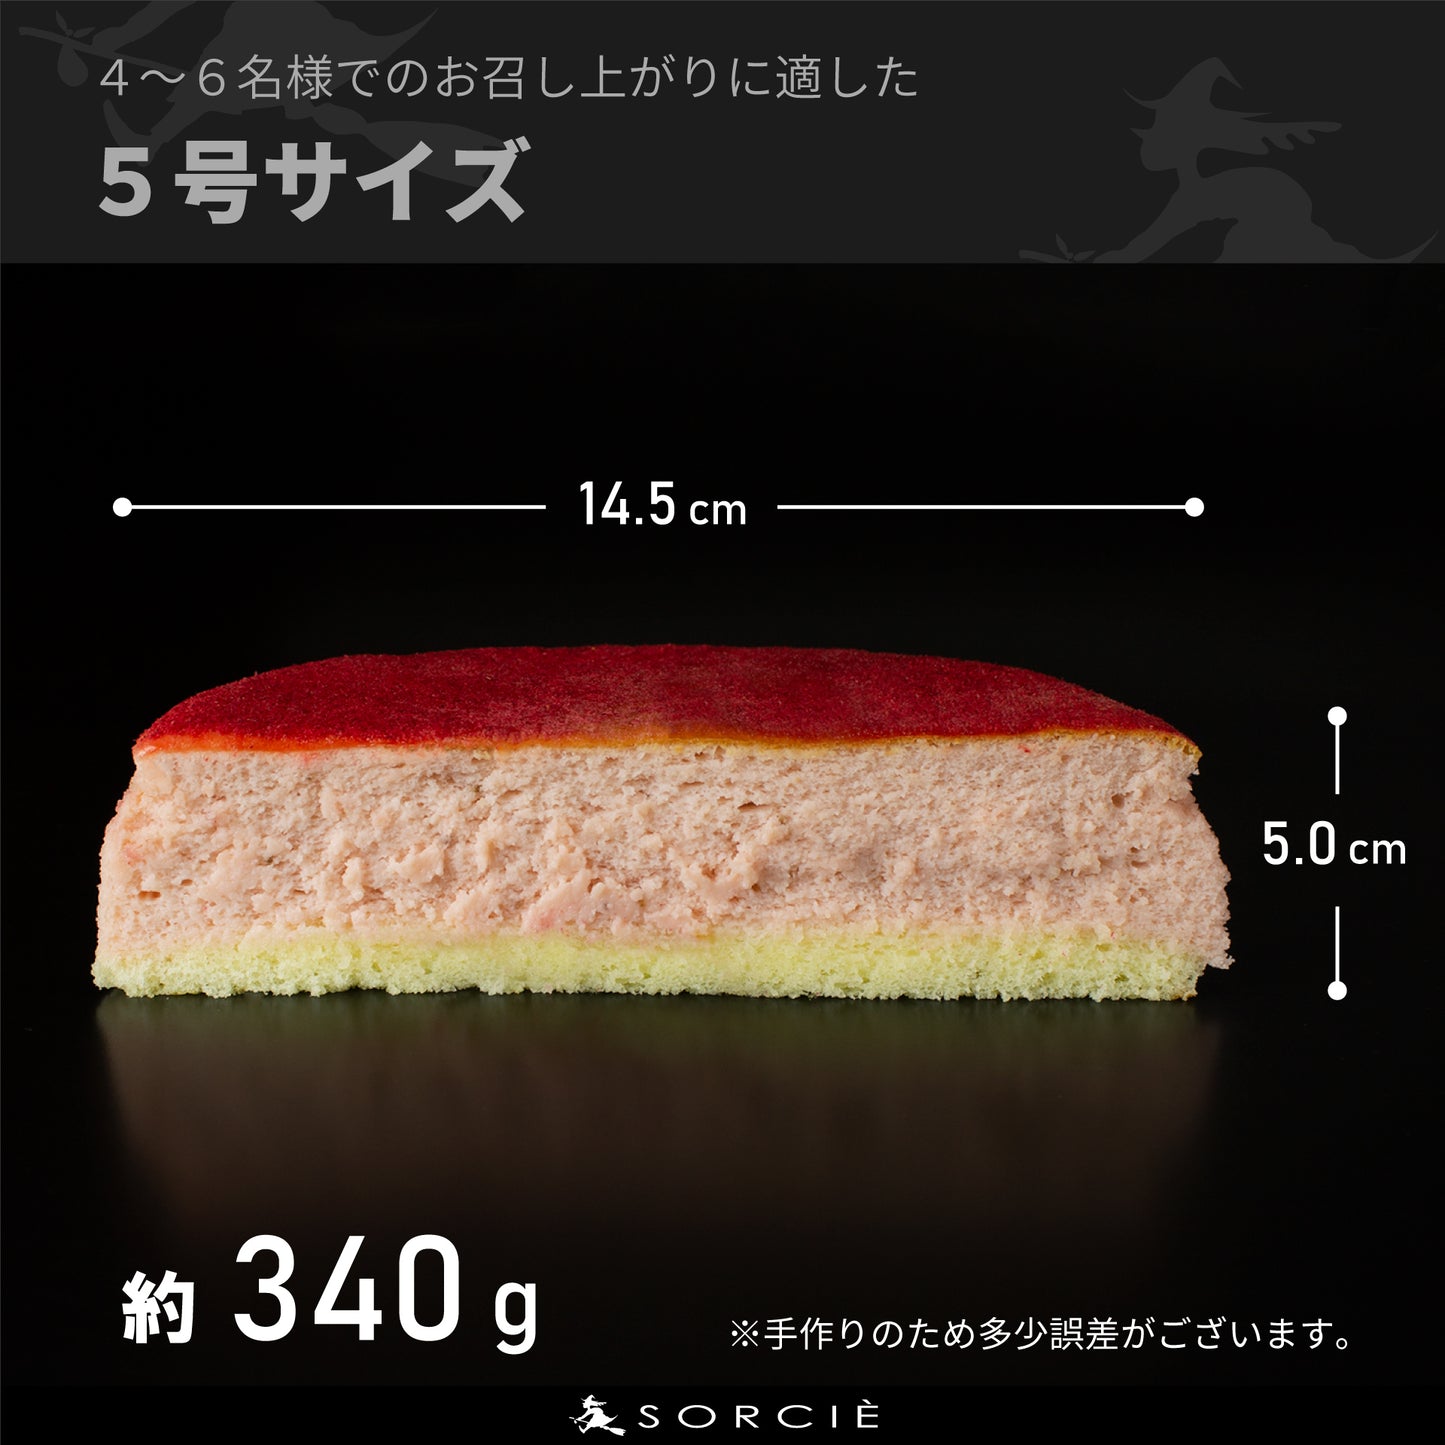 【宅配】苺スフレ チーズケーキ 5号 直径14.5cm 4～6人分 約340g